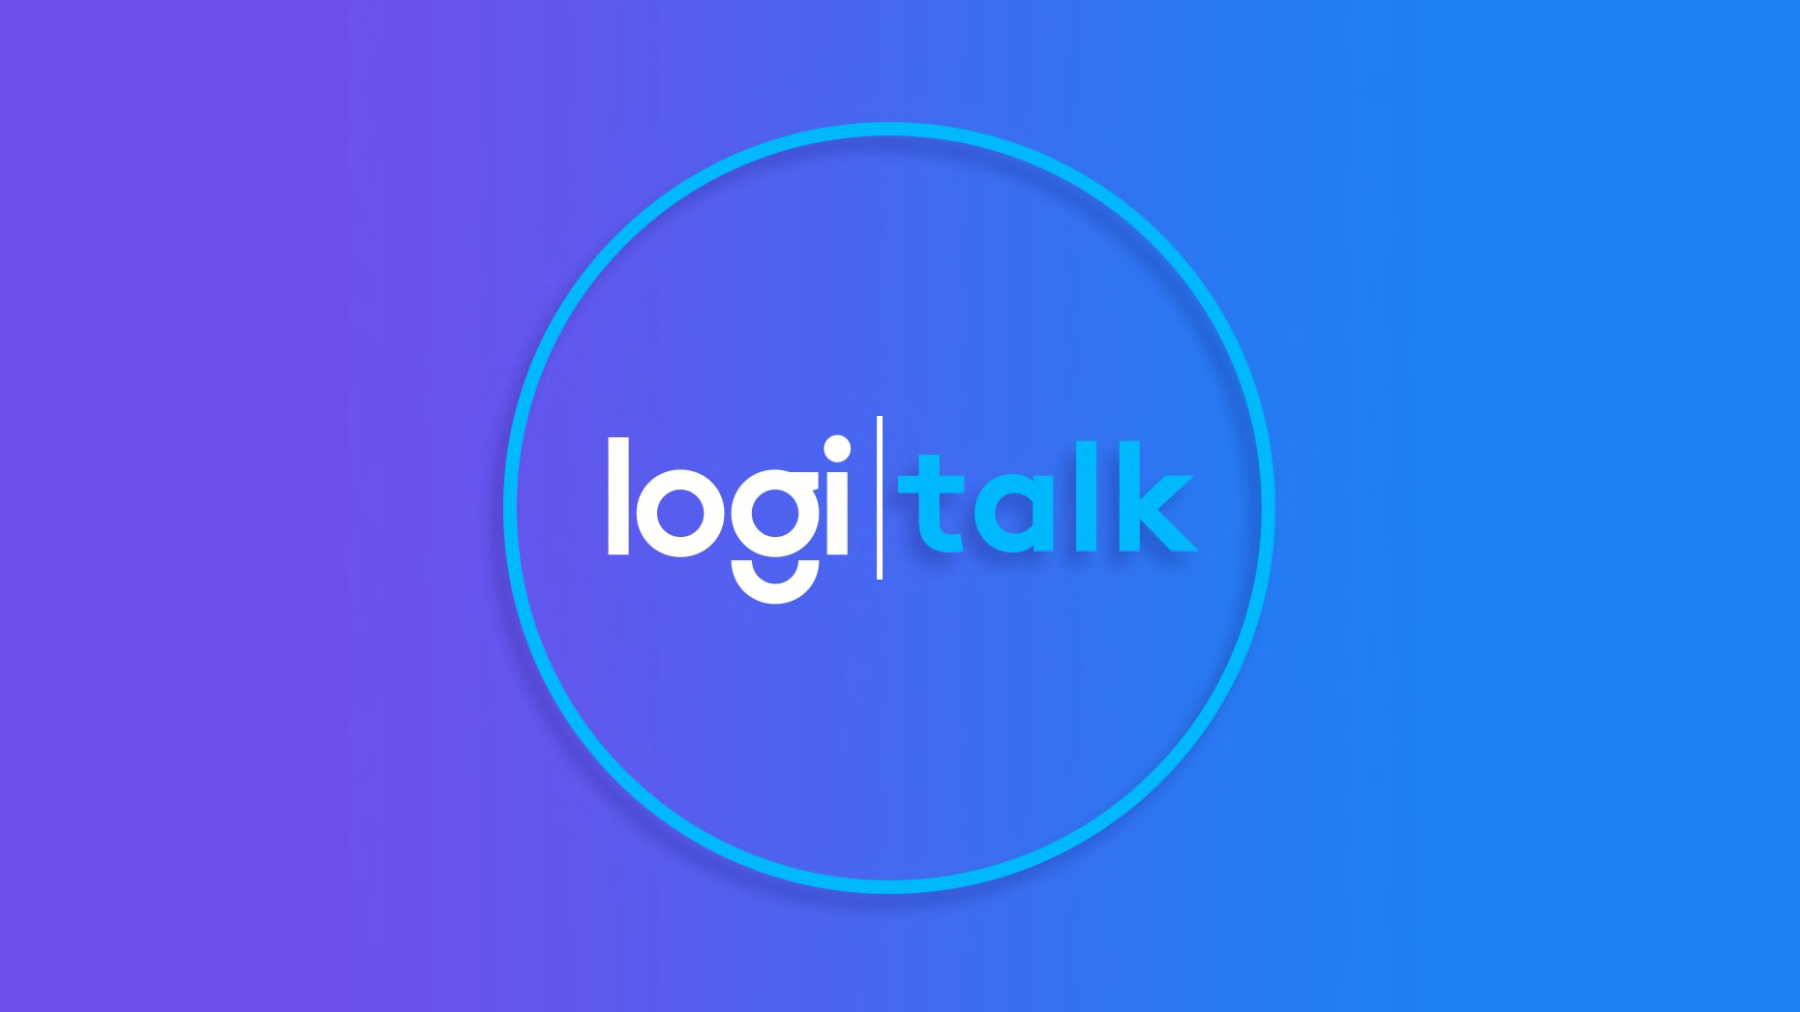 Logi talk logosu